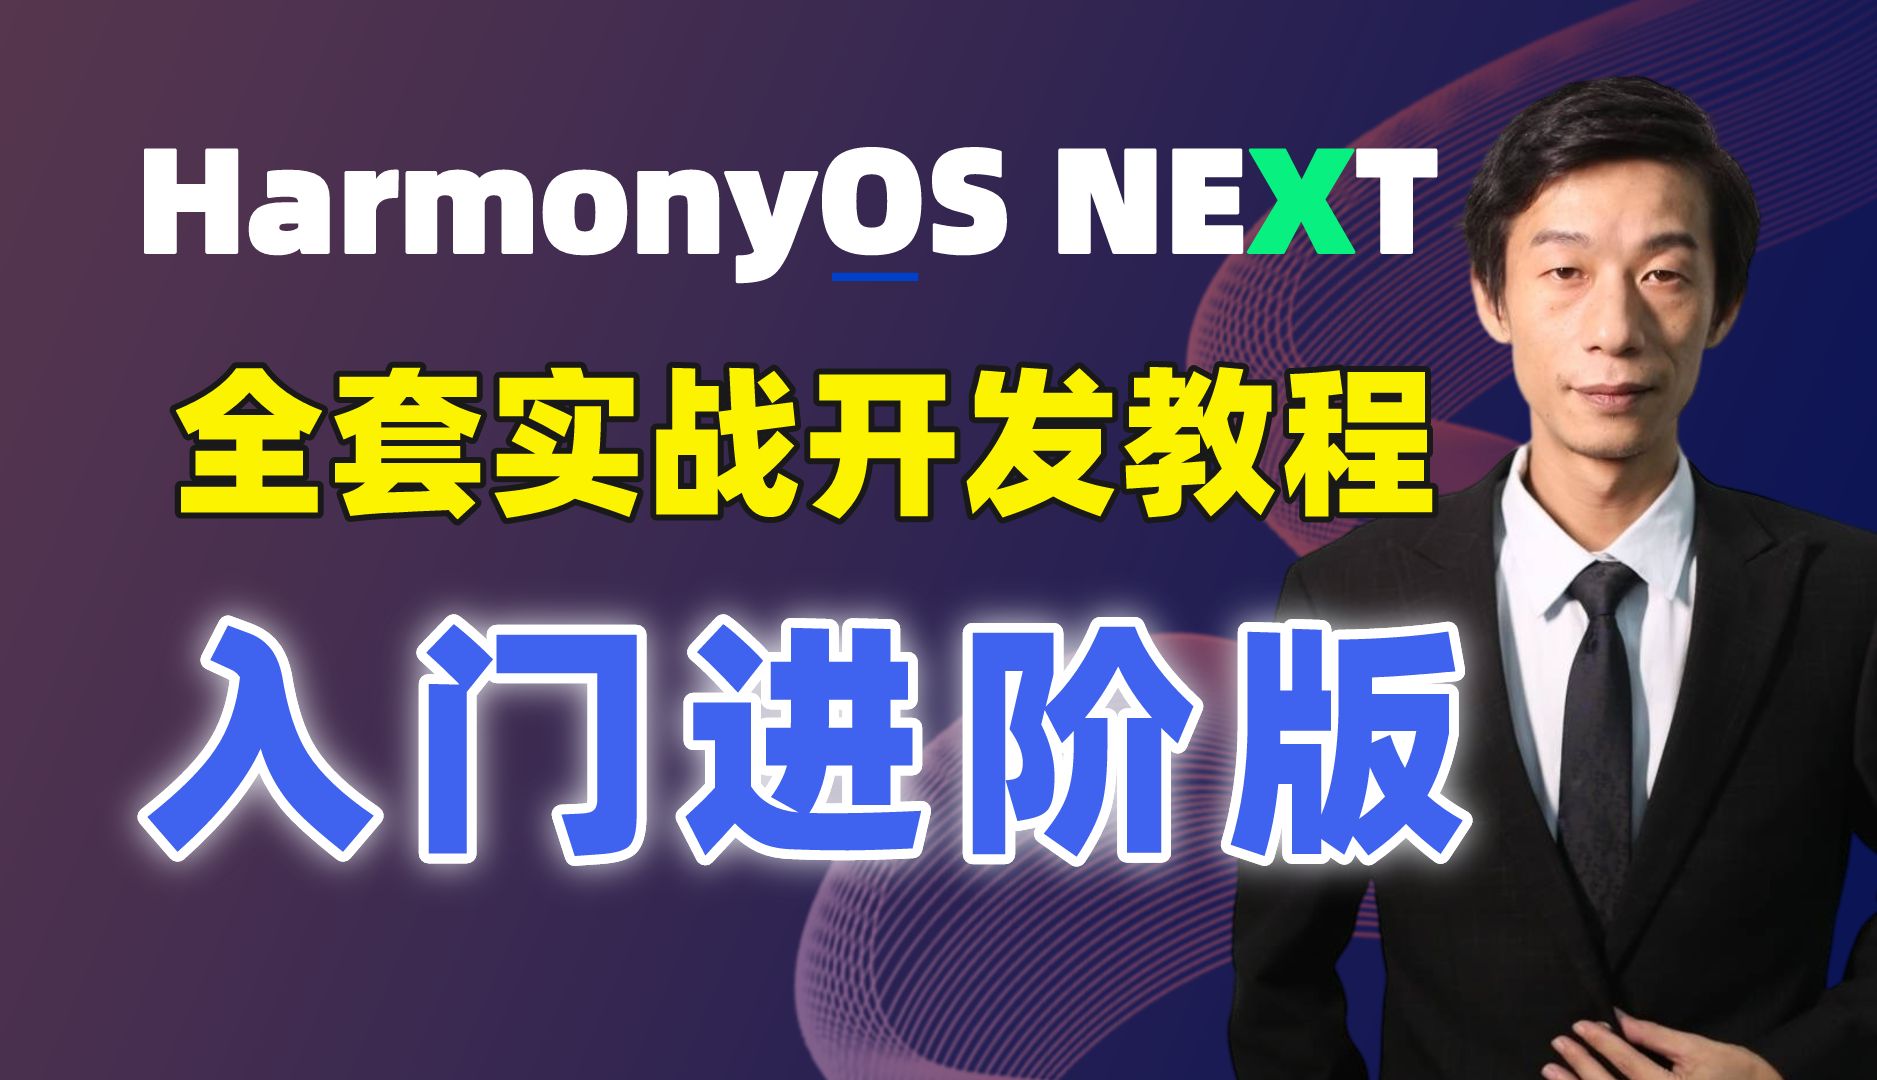 【全网首发】鸿蒙HarmonyOS NEXT应用开发-零基础入门到企业级实战全套教程（ArkTS、ArkUI、Stage、内核、南向、项目实战等）